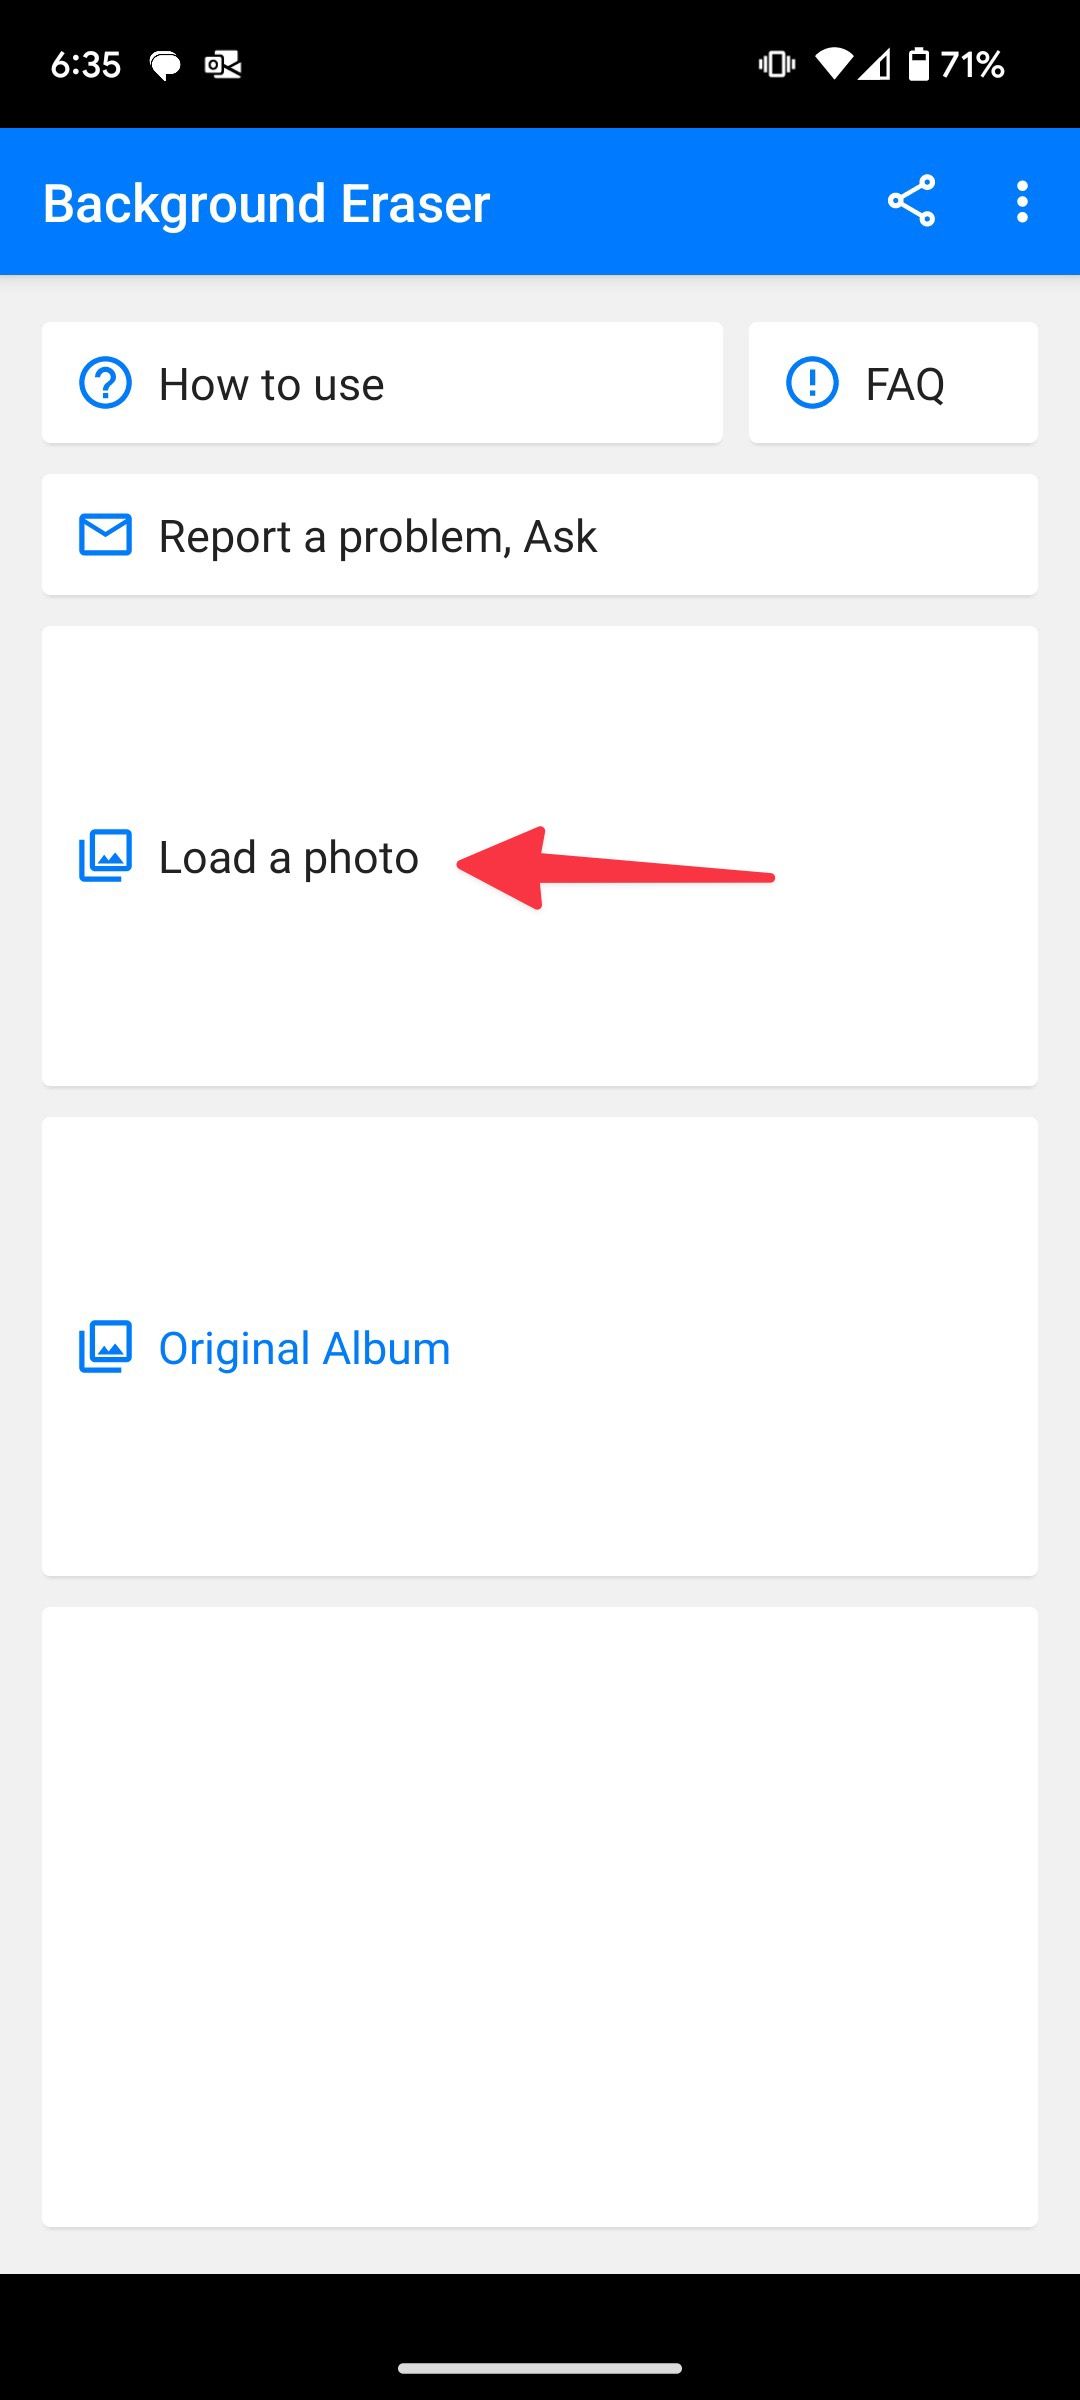 load photos in Background eraser